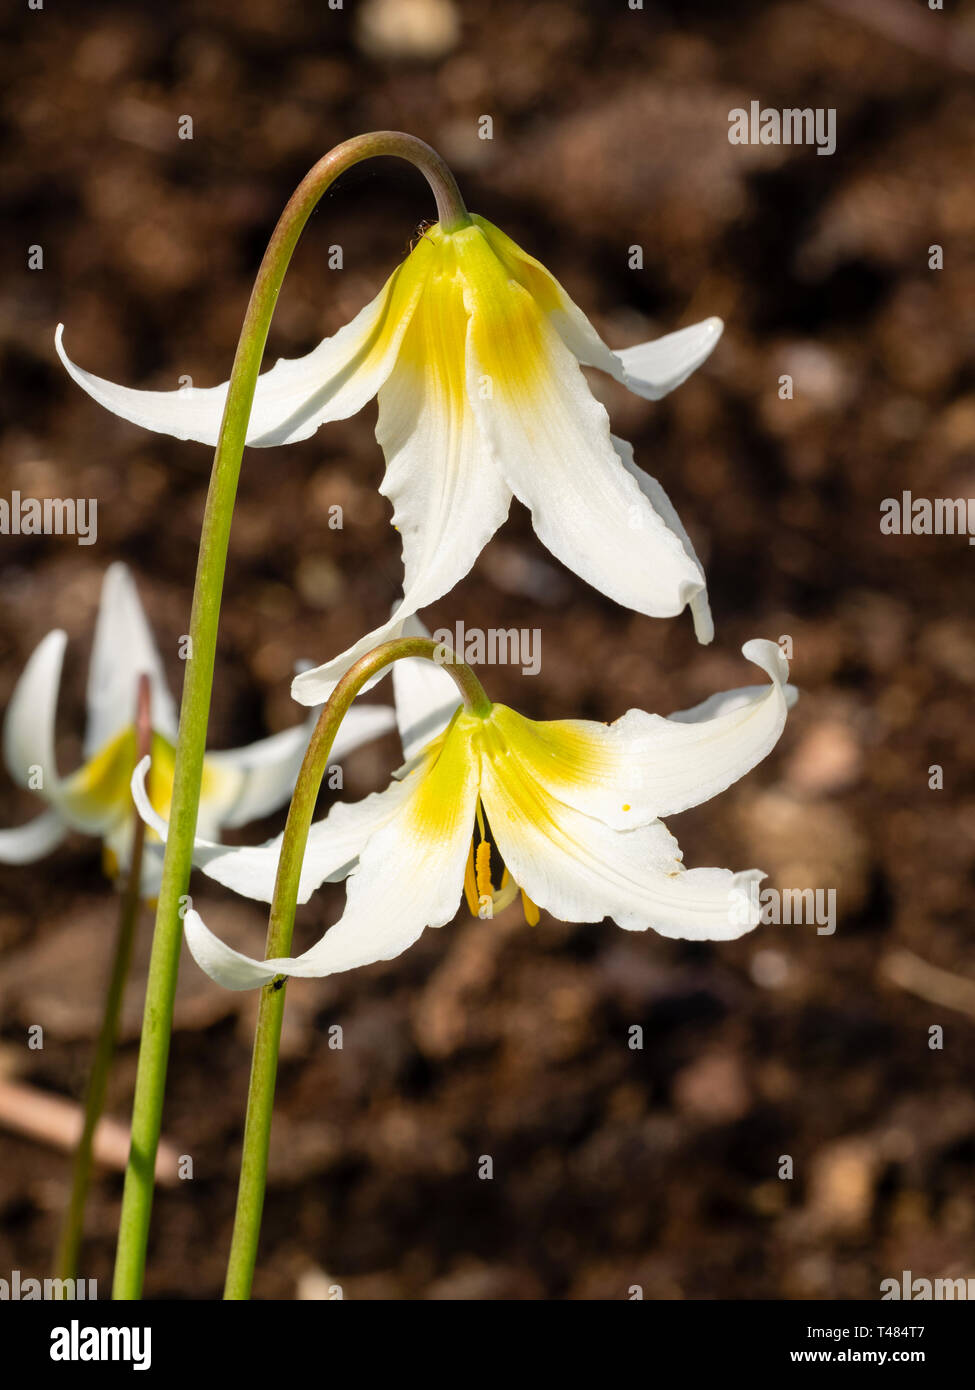 Fleurs jaune passant au blanc de la lampe, bois printemps hardy Erythronium 'Jeanette Brickell' Banque D'Images